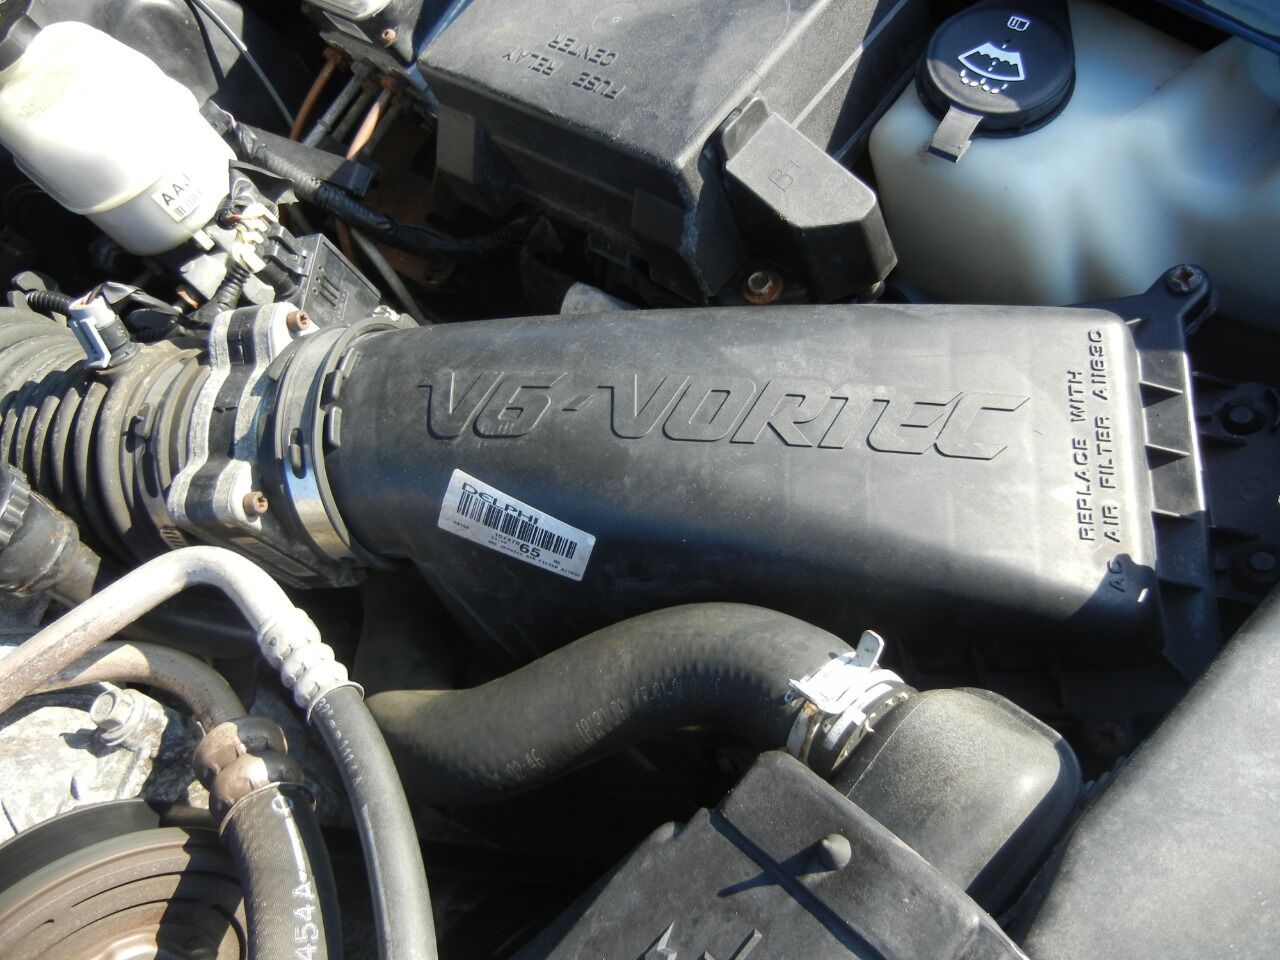 2004 Chevrolet Blazer